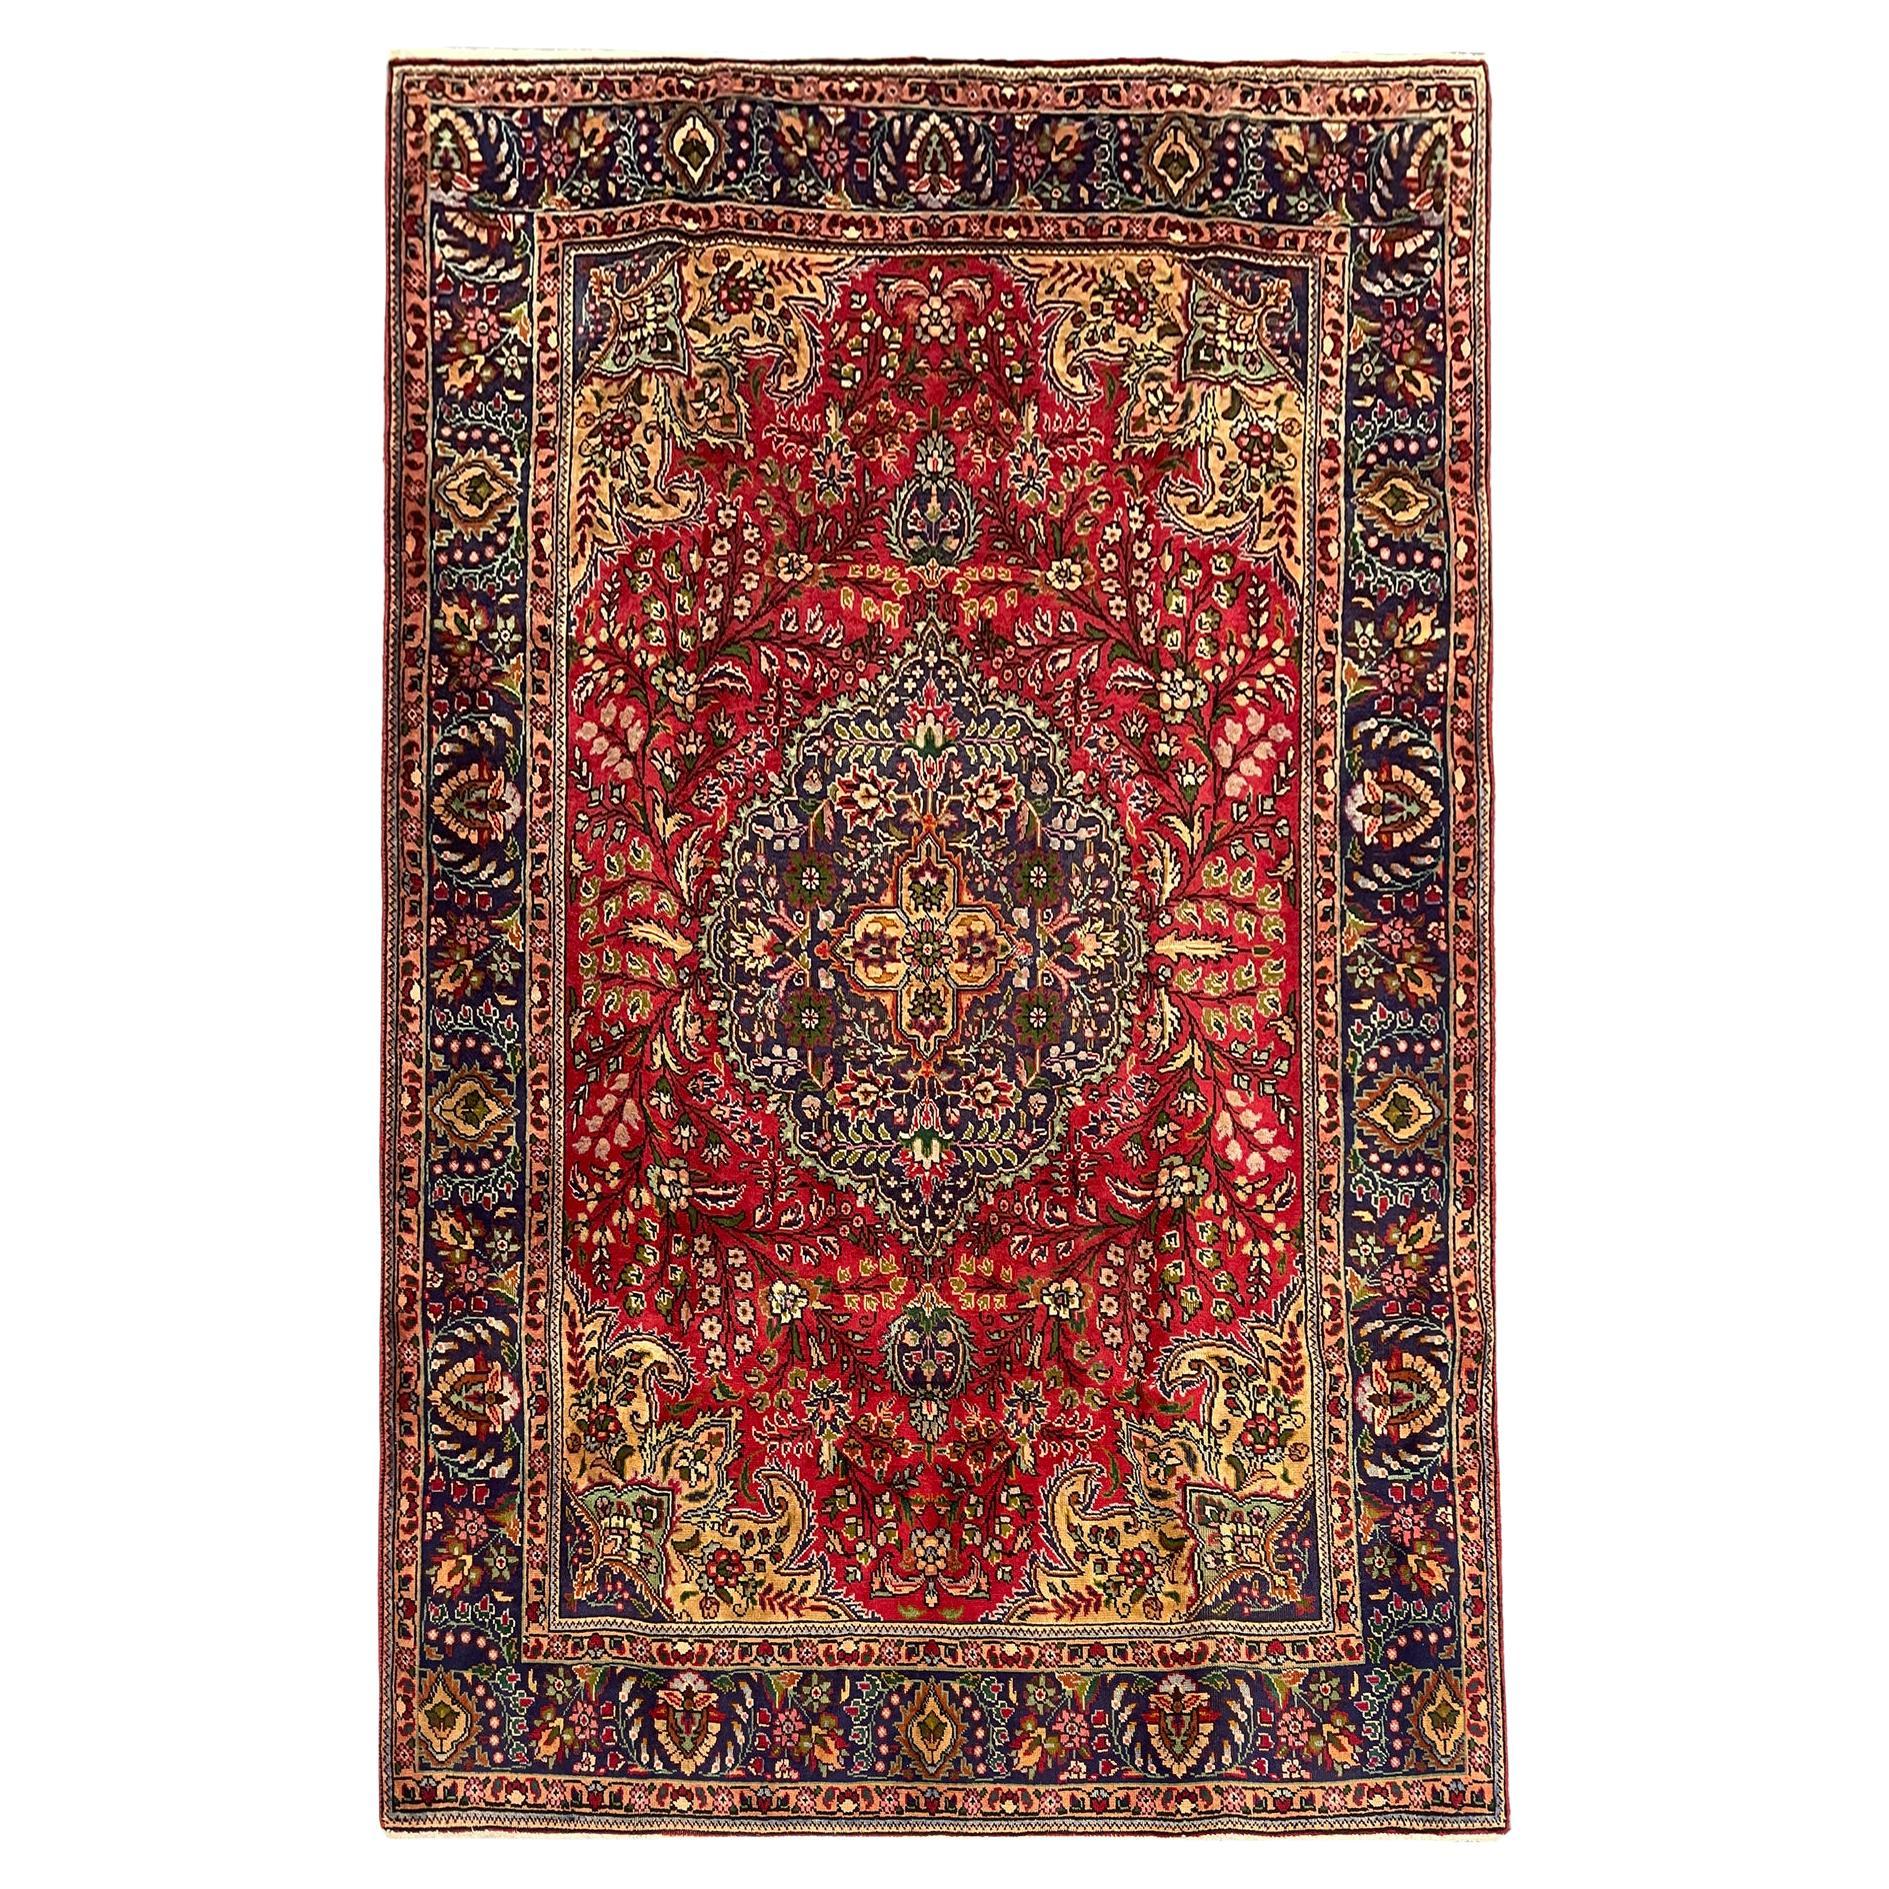 Tapis vintage en laine rouge, tapis oriental tissé à la main à motifs floraux